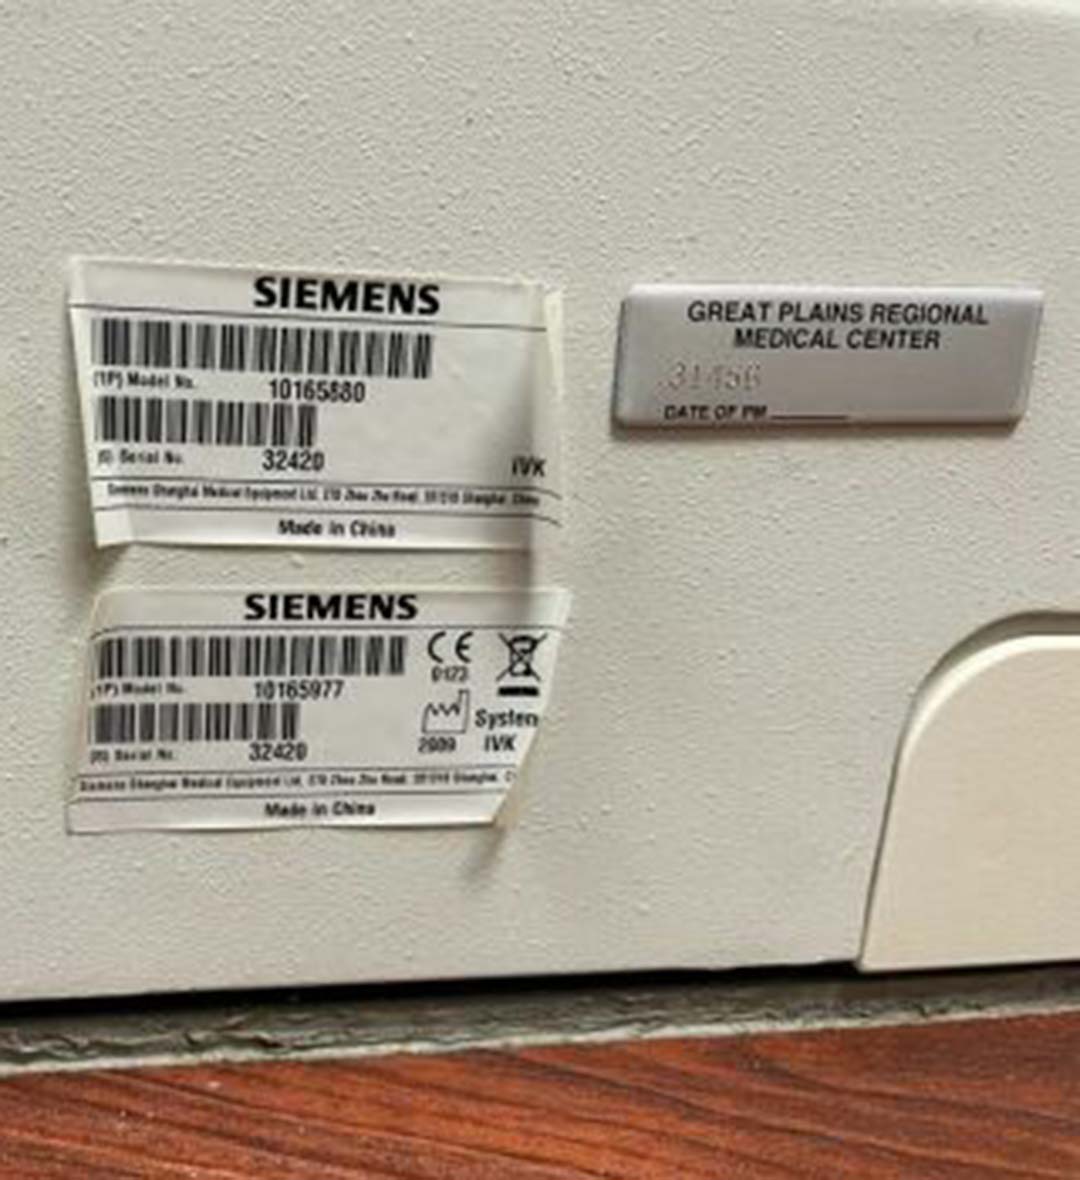 2009 Siemens Emotion 16 CT Scanner